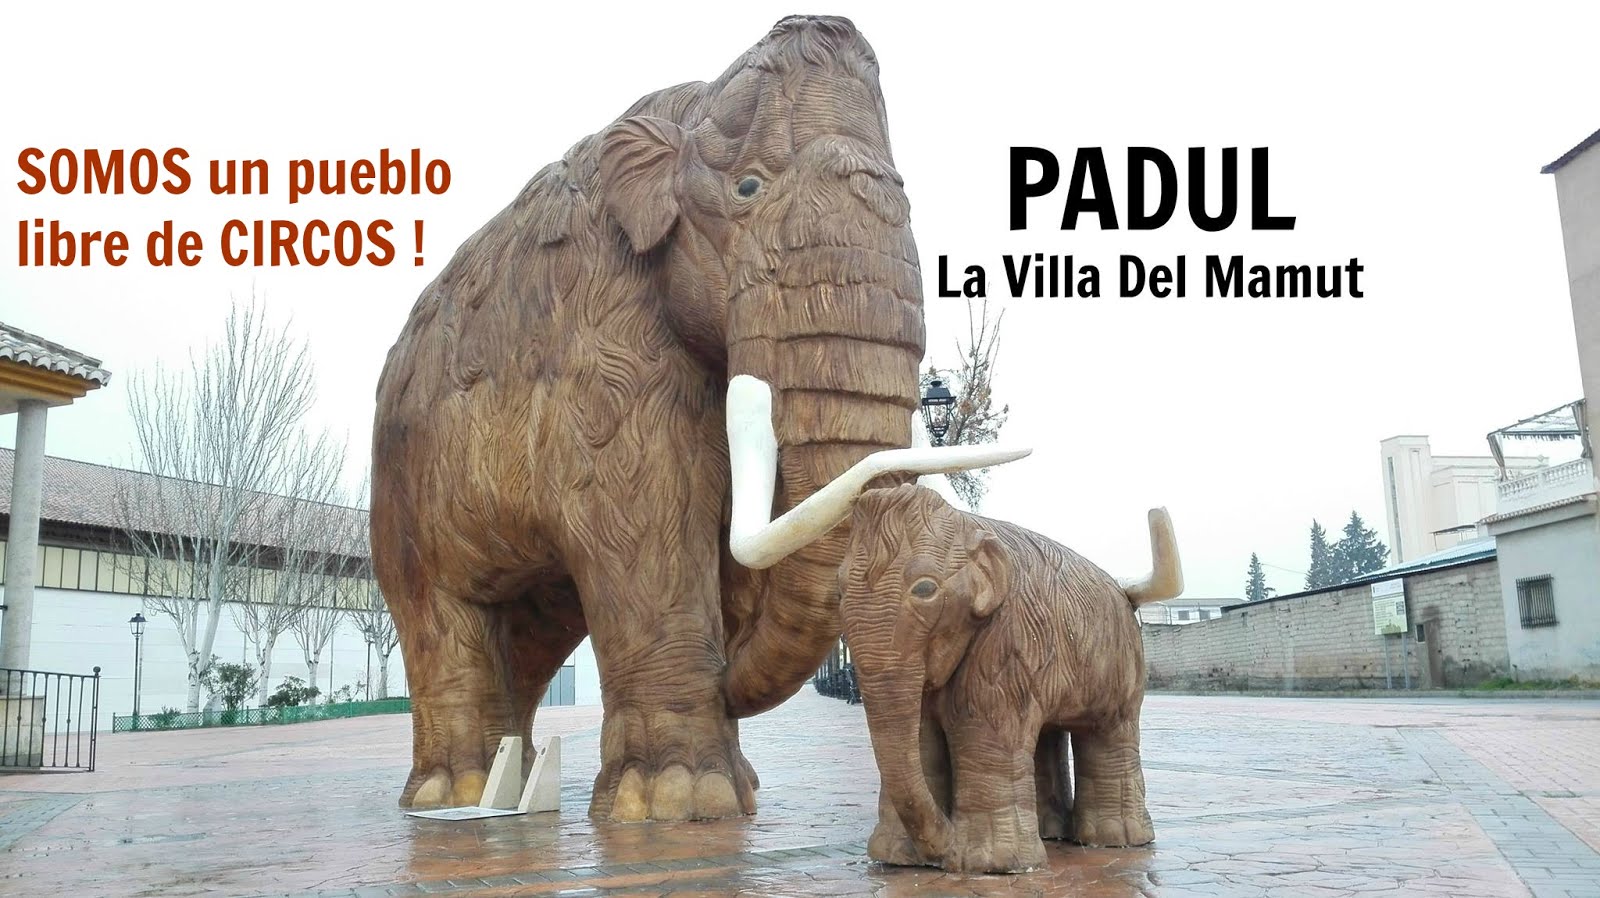 PADUL PUEBLO LIBRE DE CIRCOS CON ANIMALES